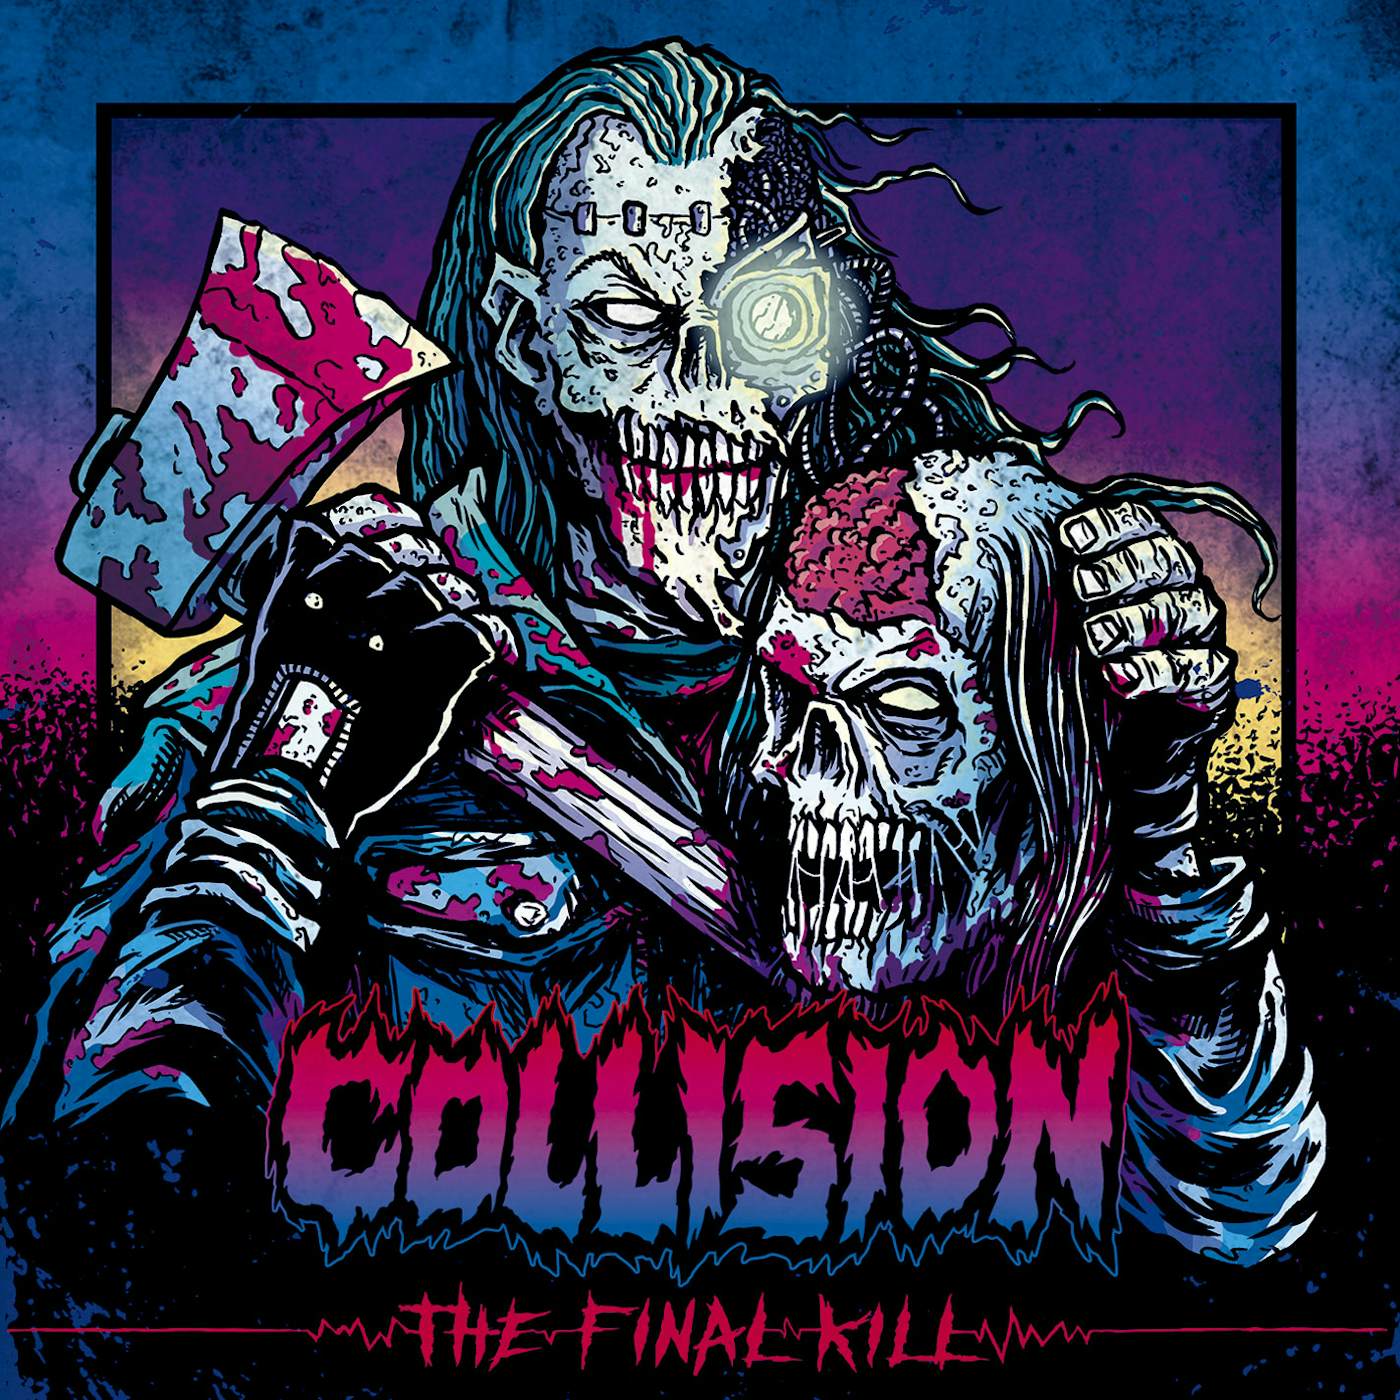 The Collision The Final Kill Vinyl Record